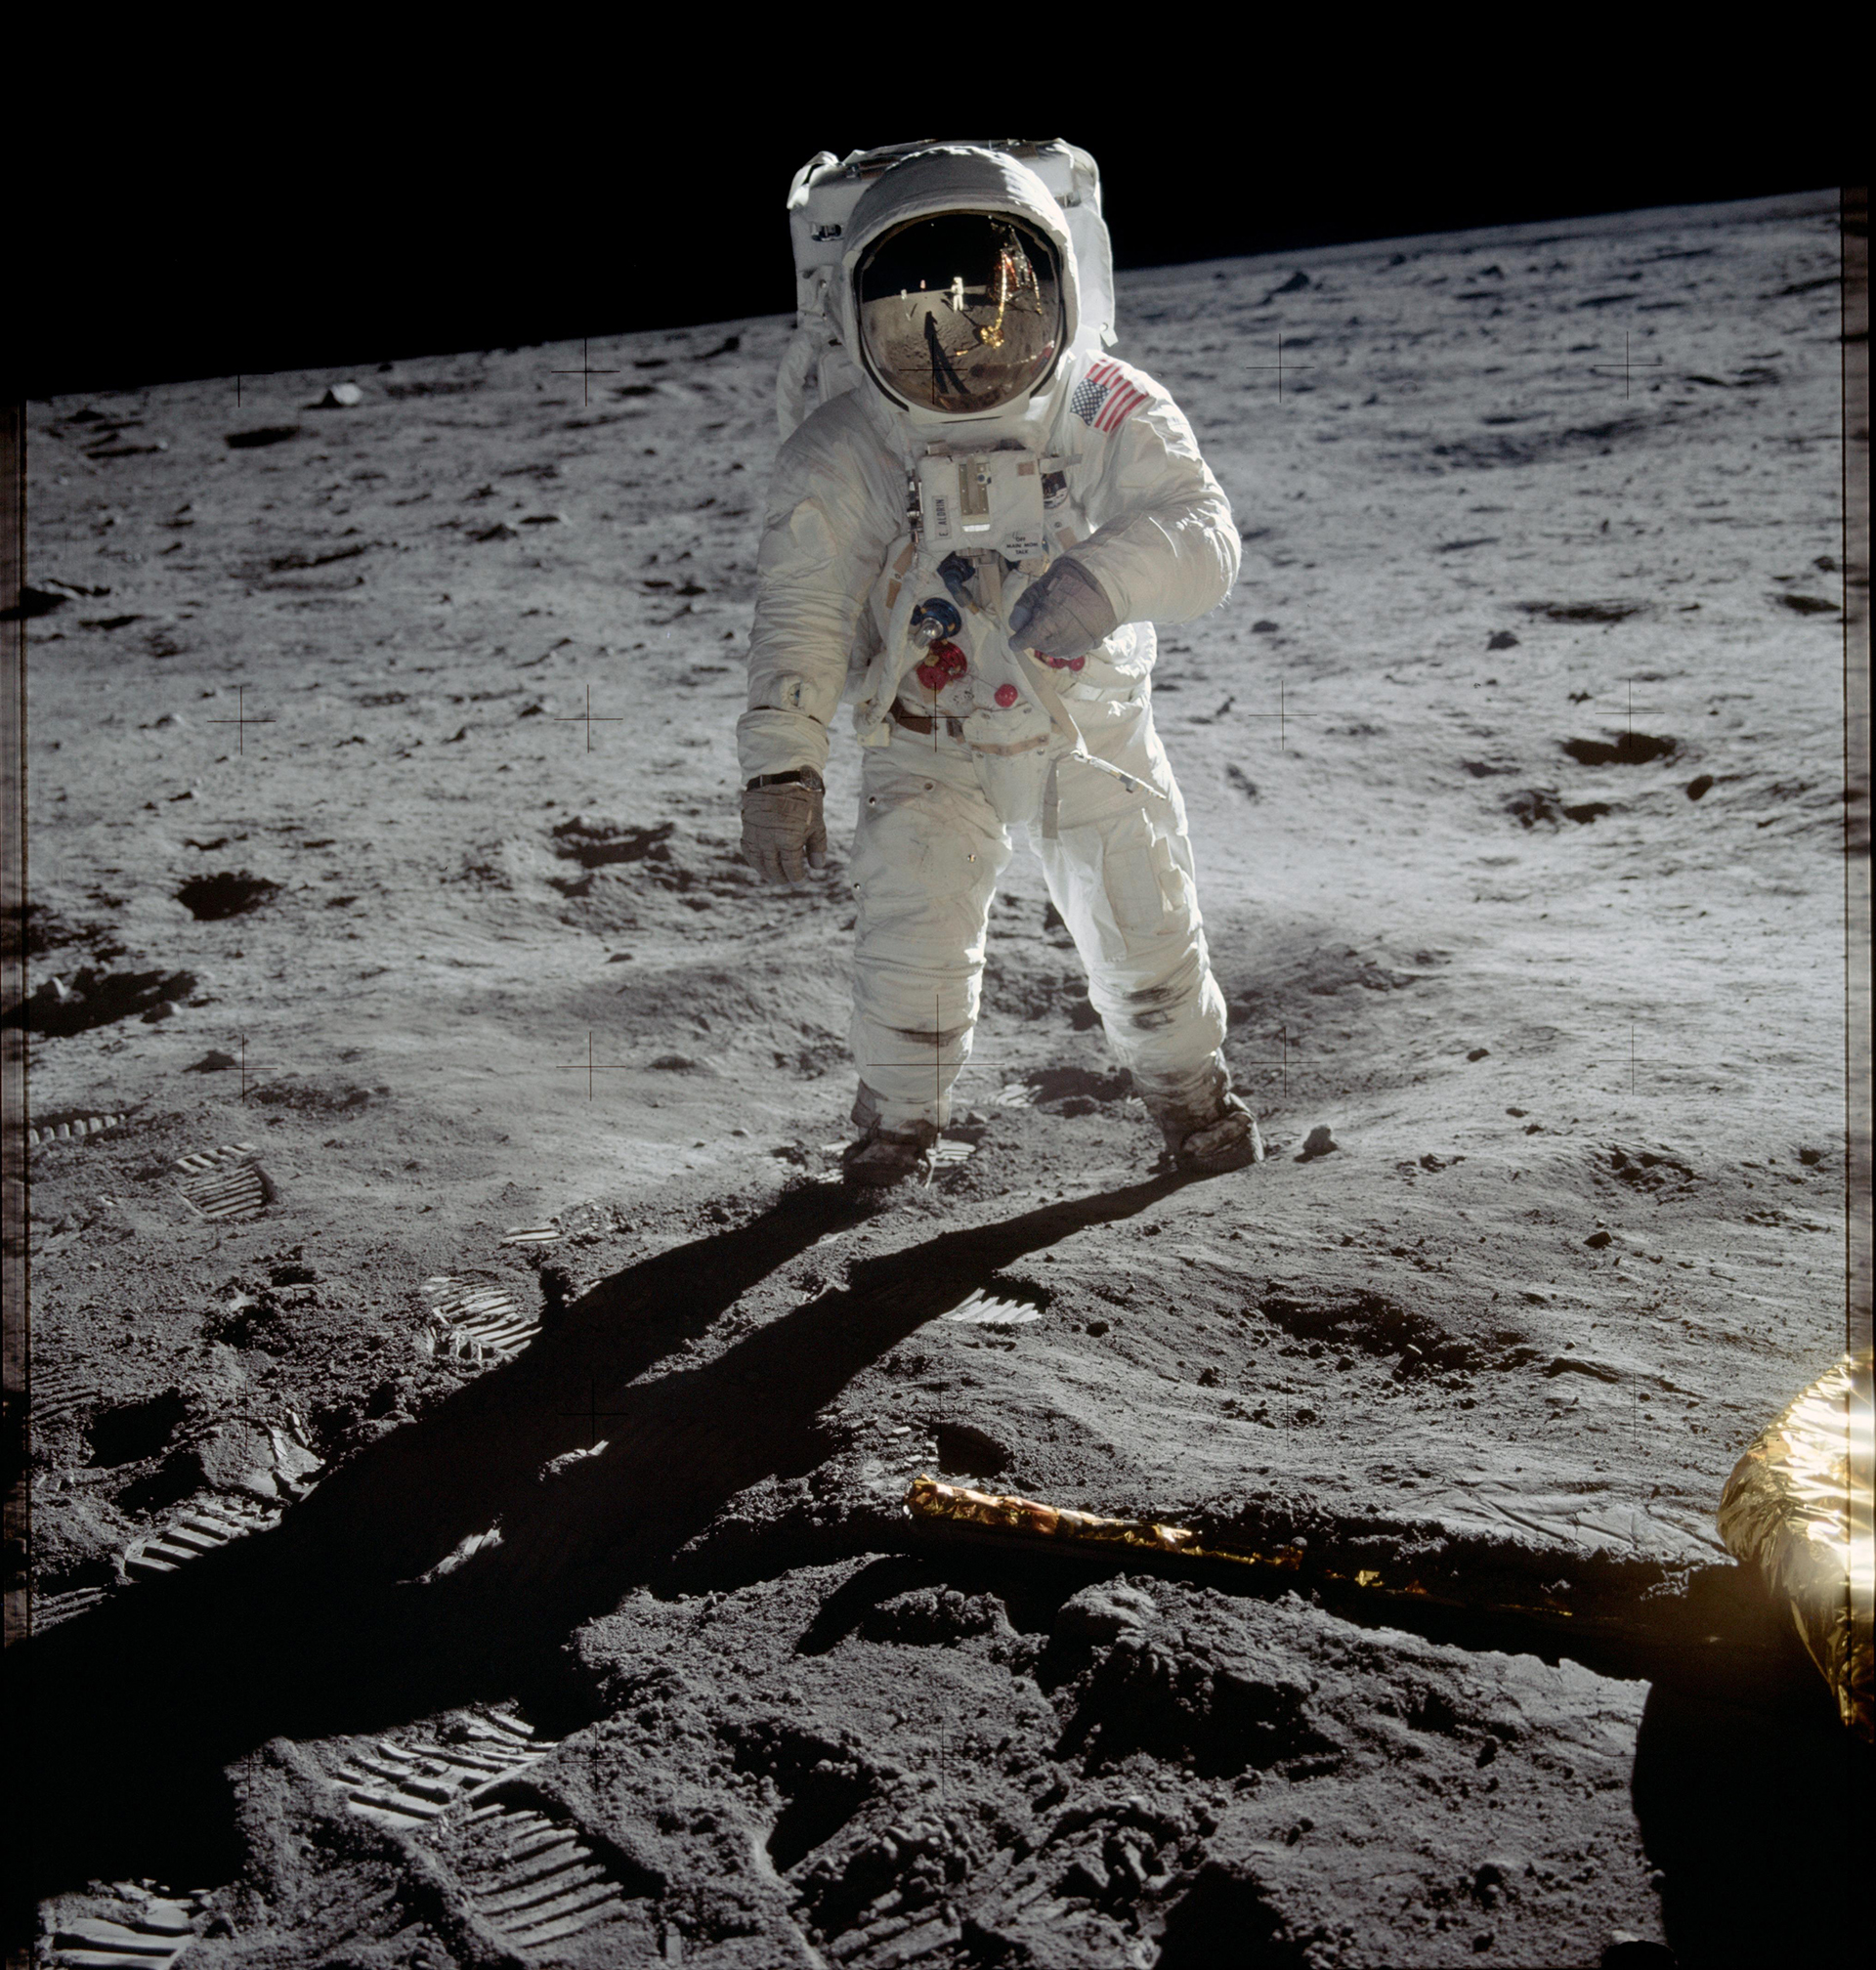 El astronauta Buzz Aldrin camina en la Luna, durante la misión Apolo 11 en julio de 1969 (Image Credit: NASA)